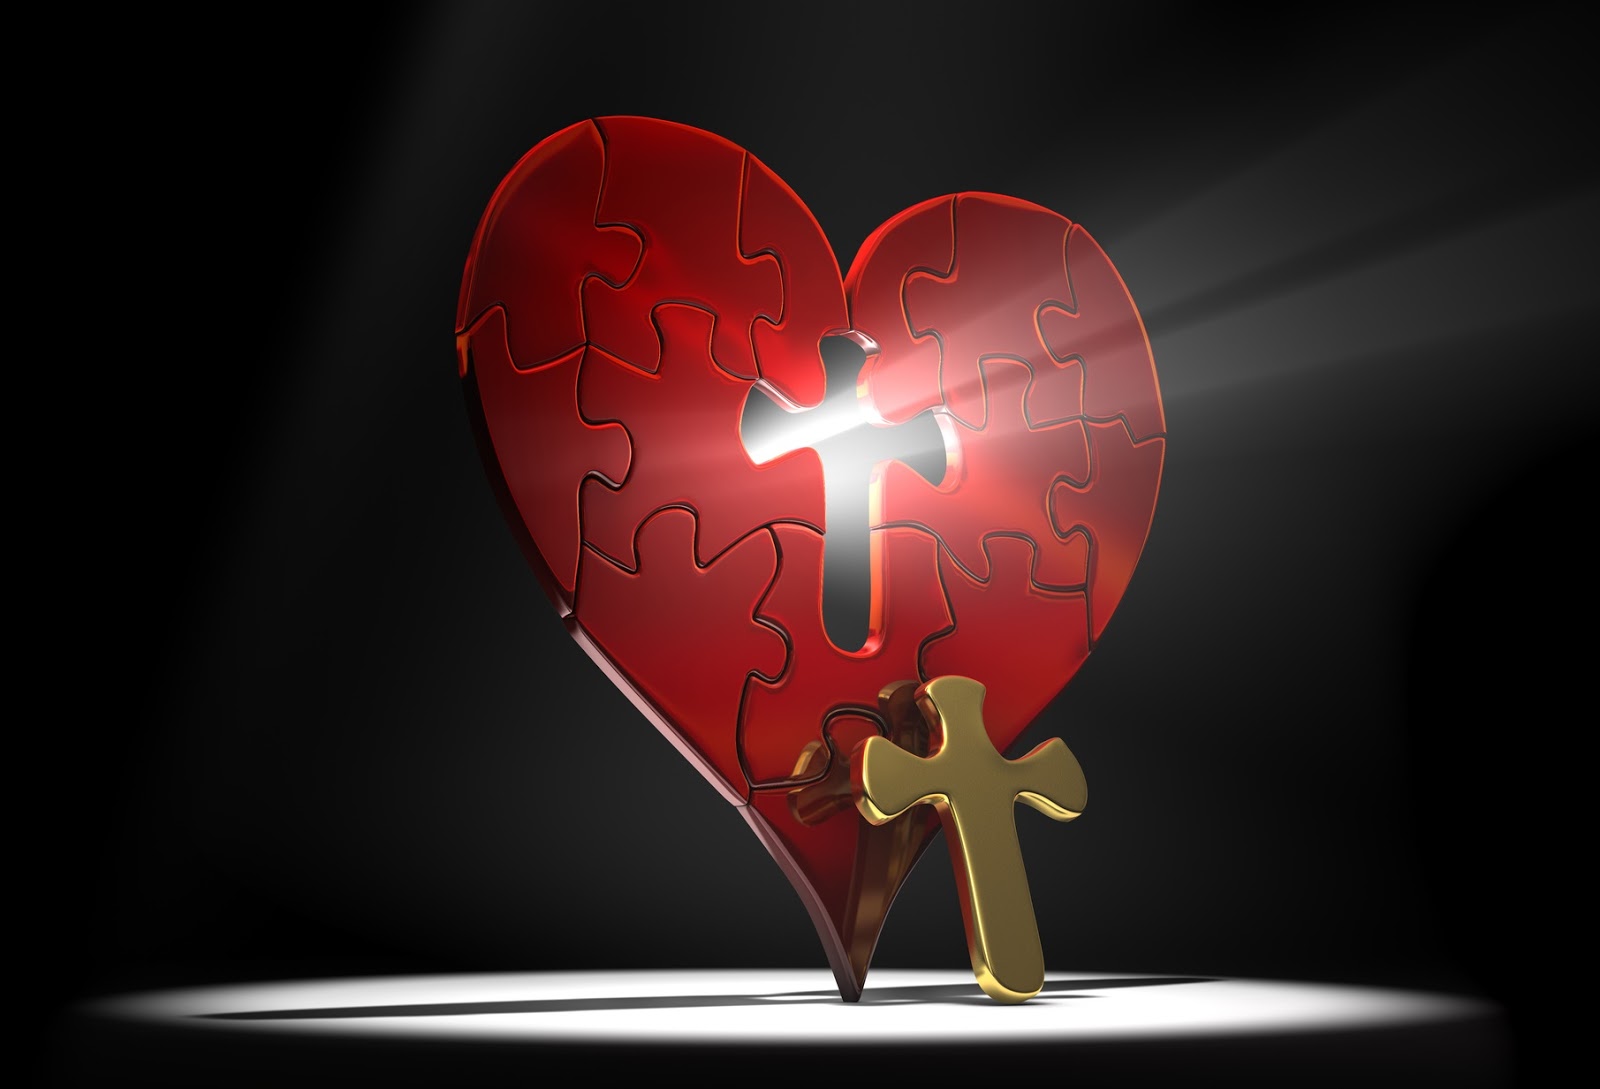 Jesus's unconditional love